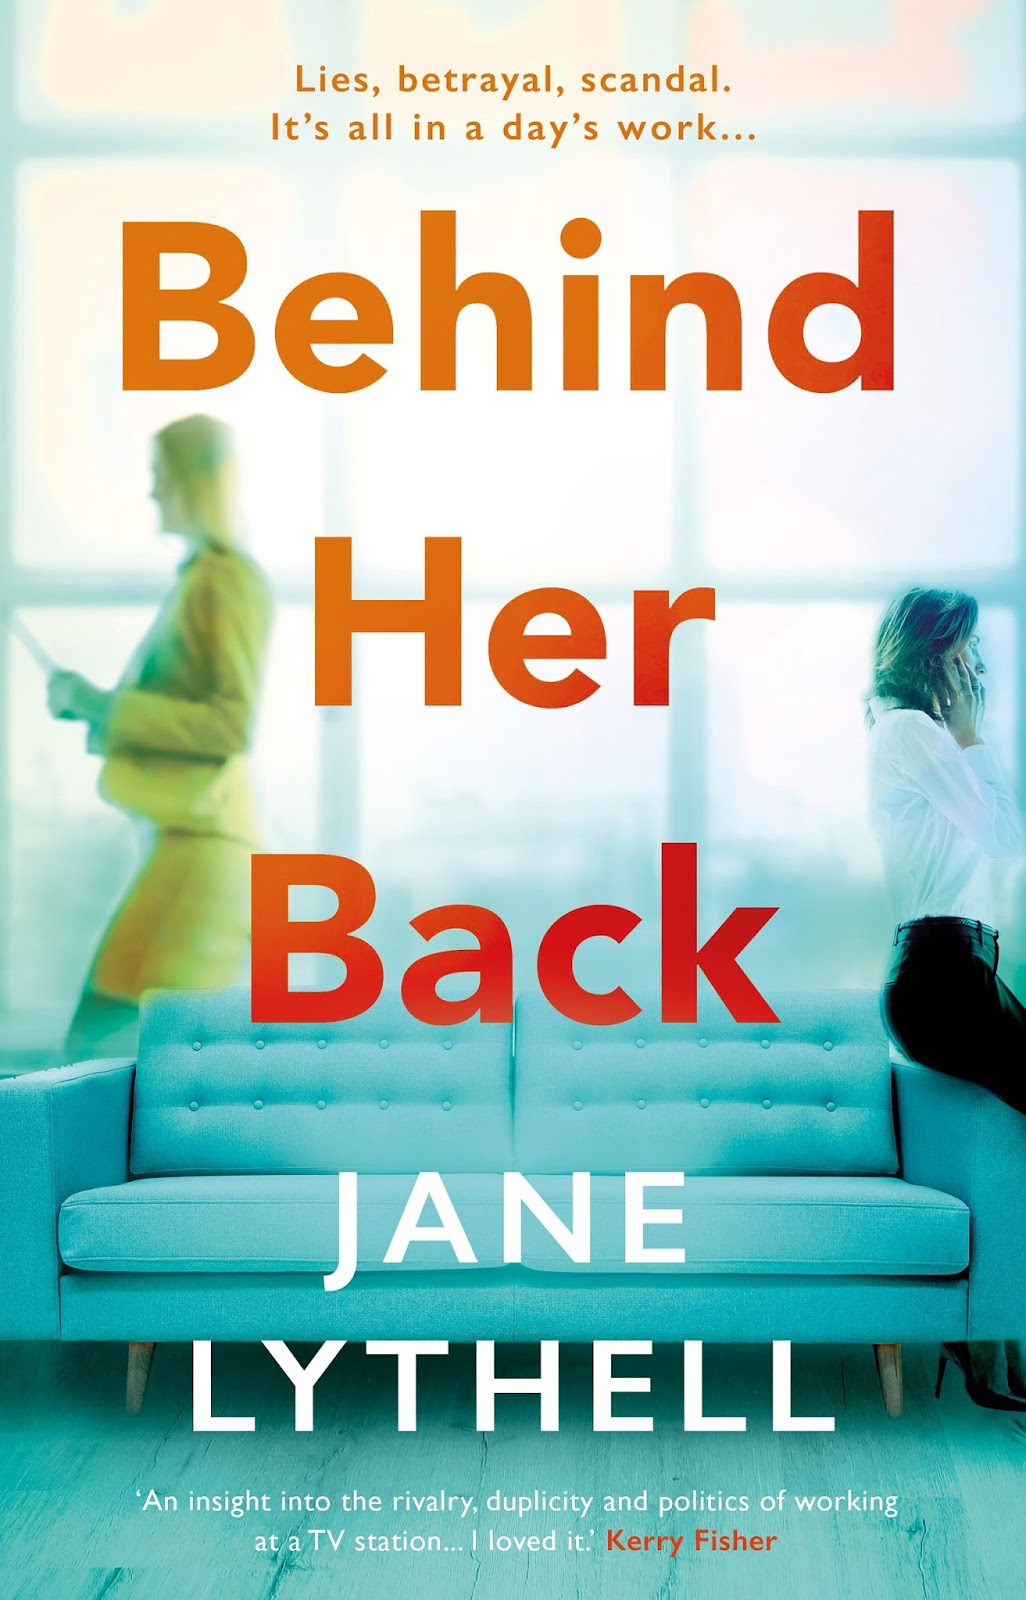 Jane back. Behind her. Behind her Eyes poster. Behind her back. She back.